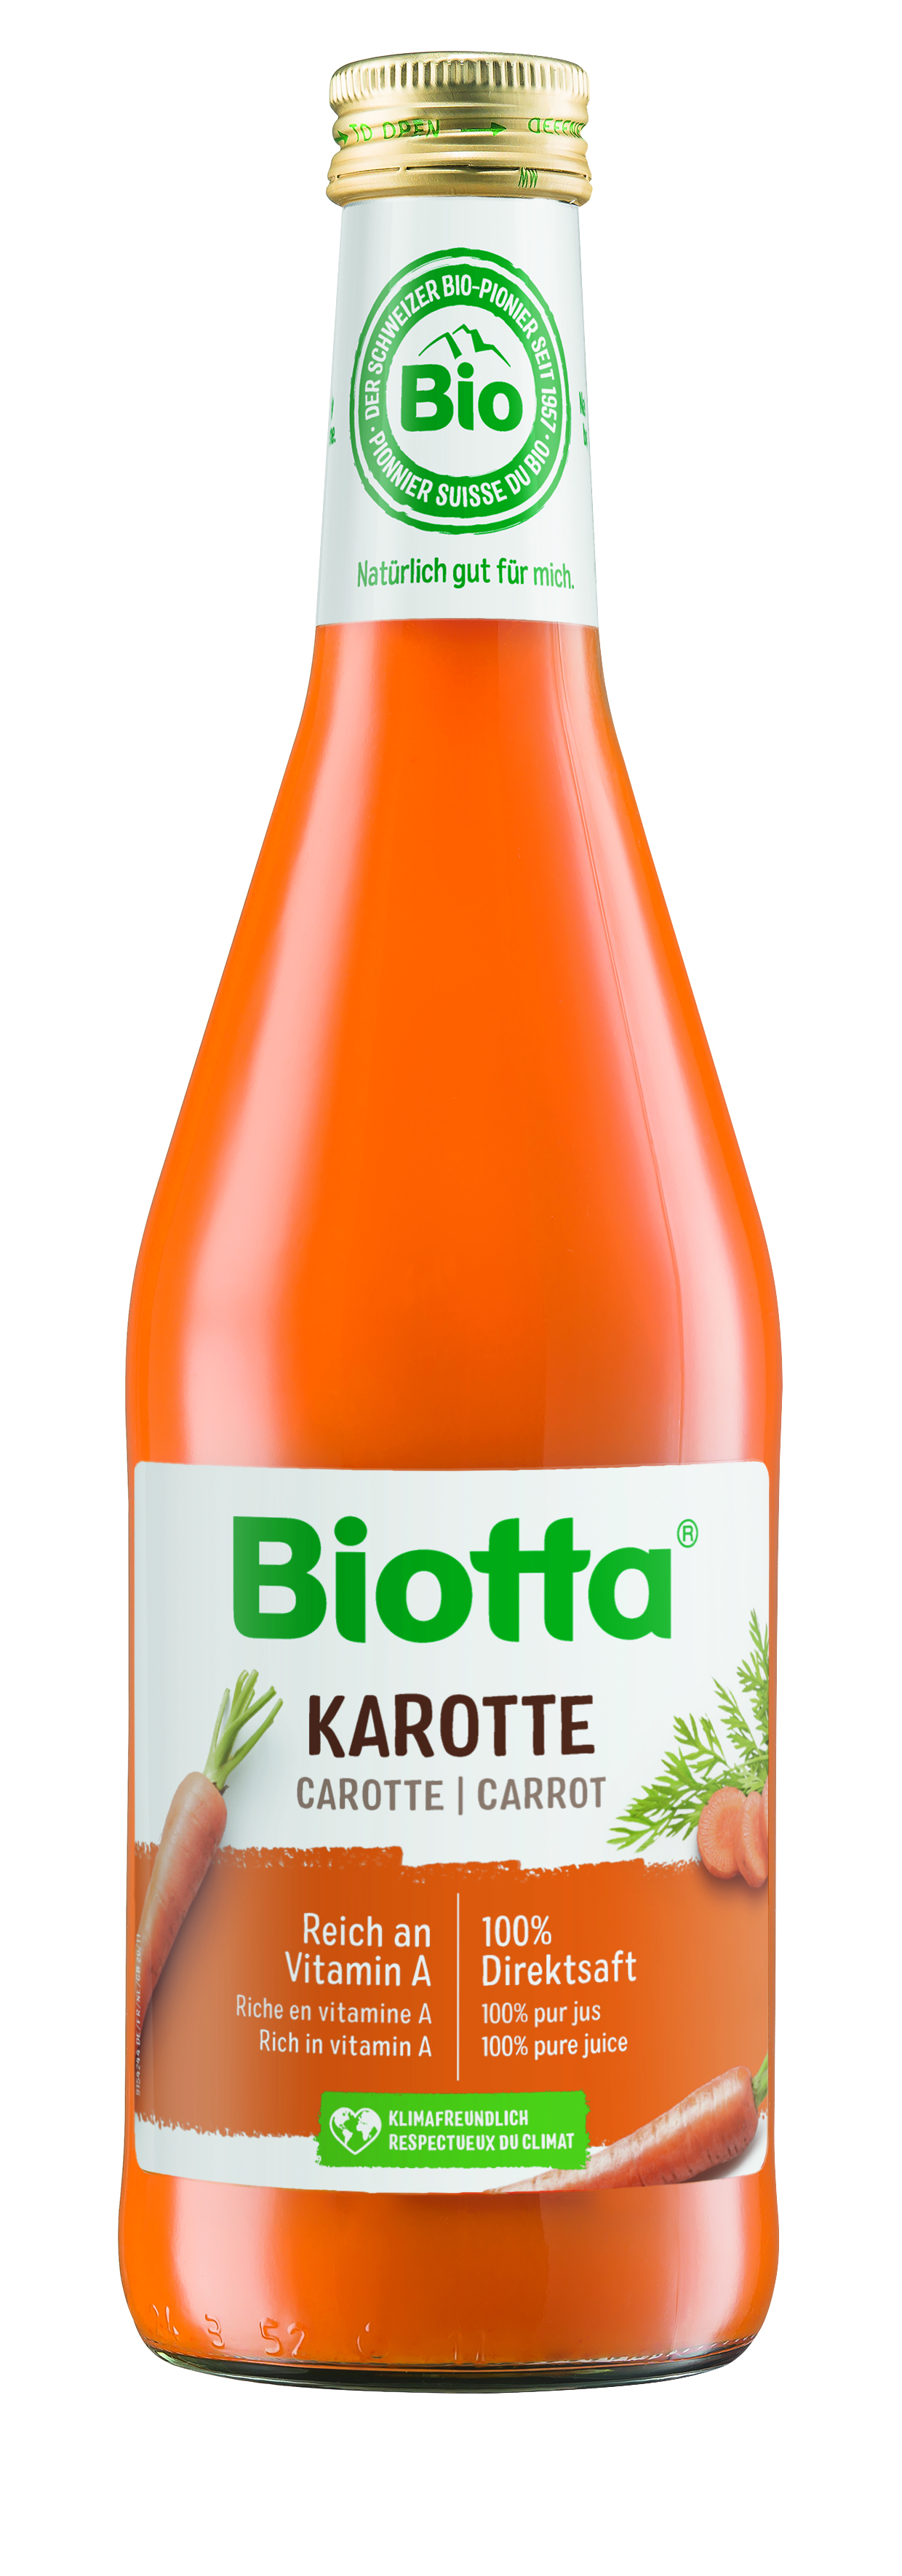 Biotta mrkvová šťava 4 kartóny - cena za 1 ks 4,083€ s DPH